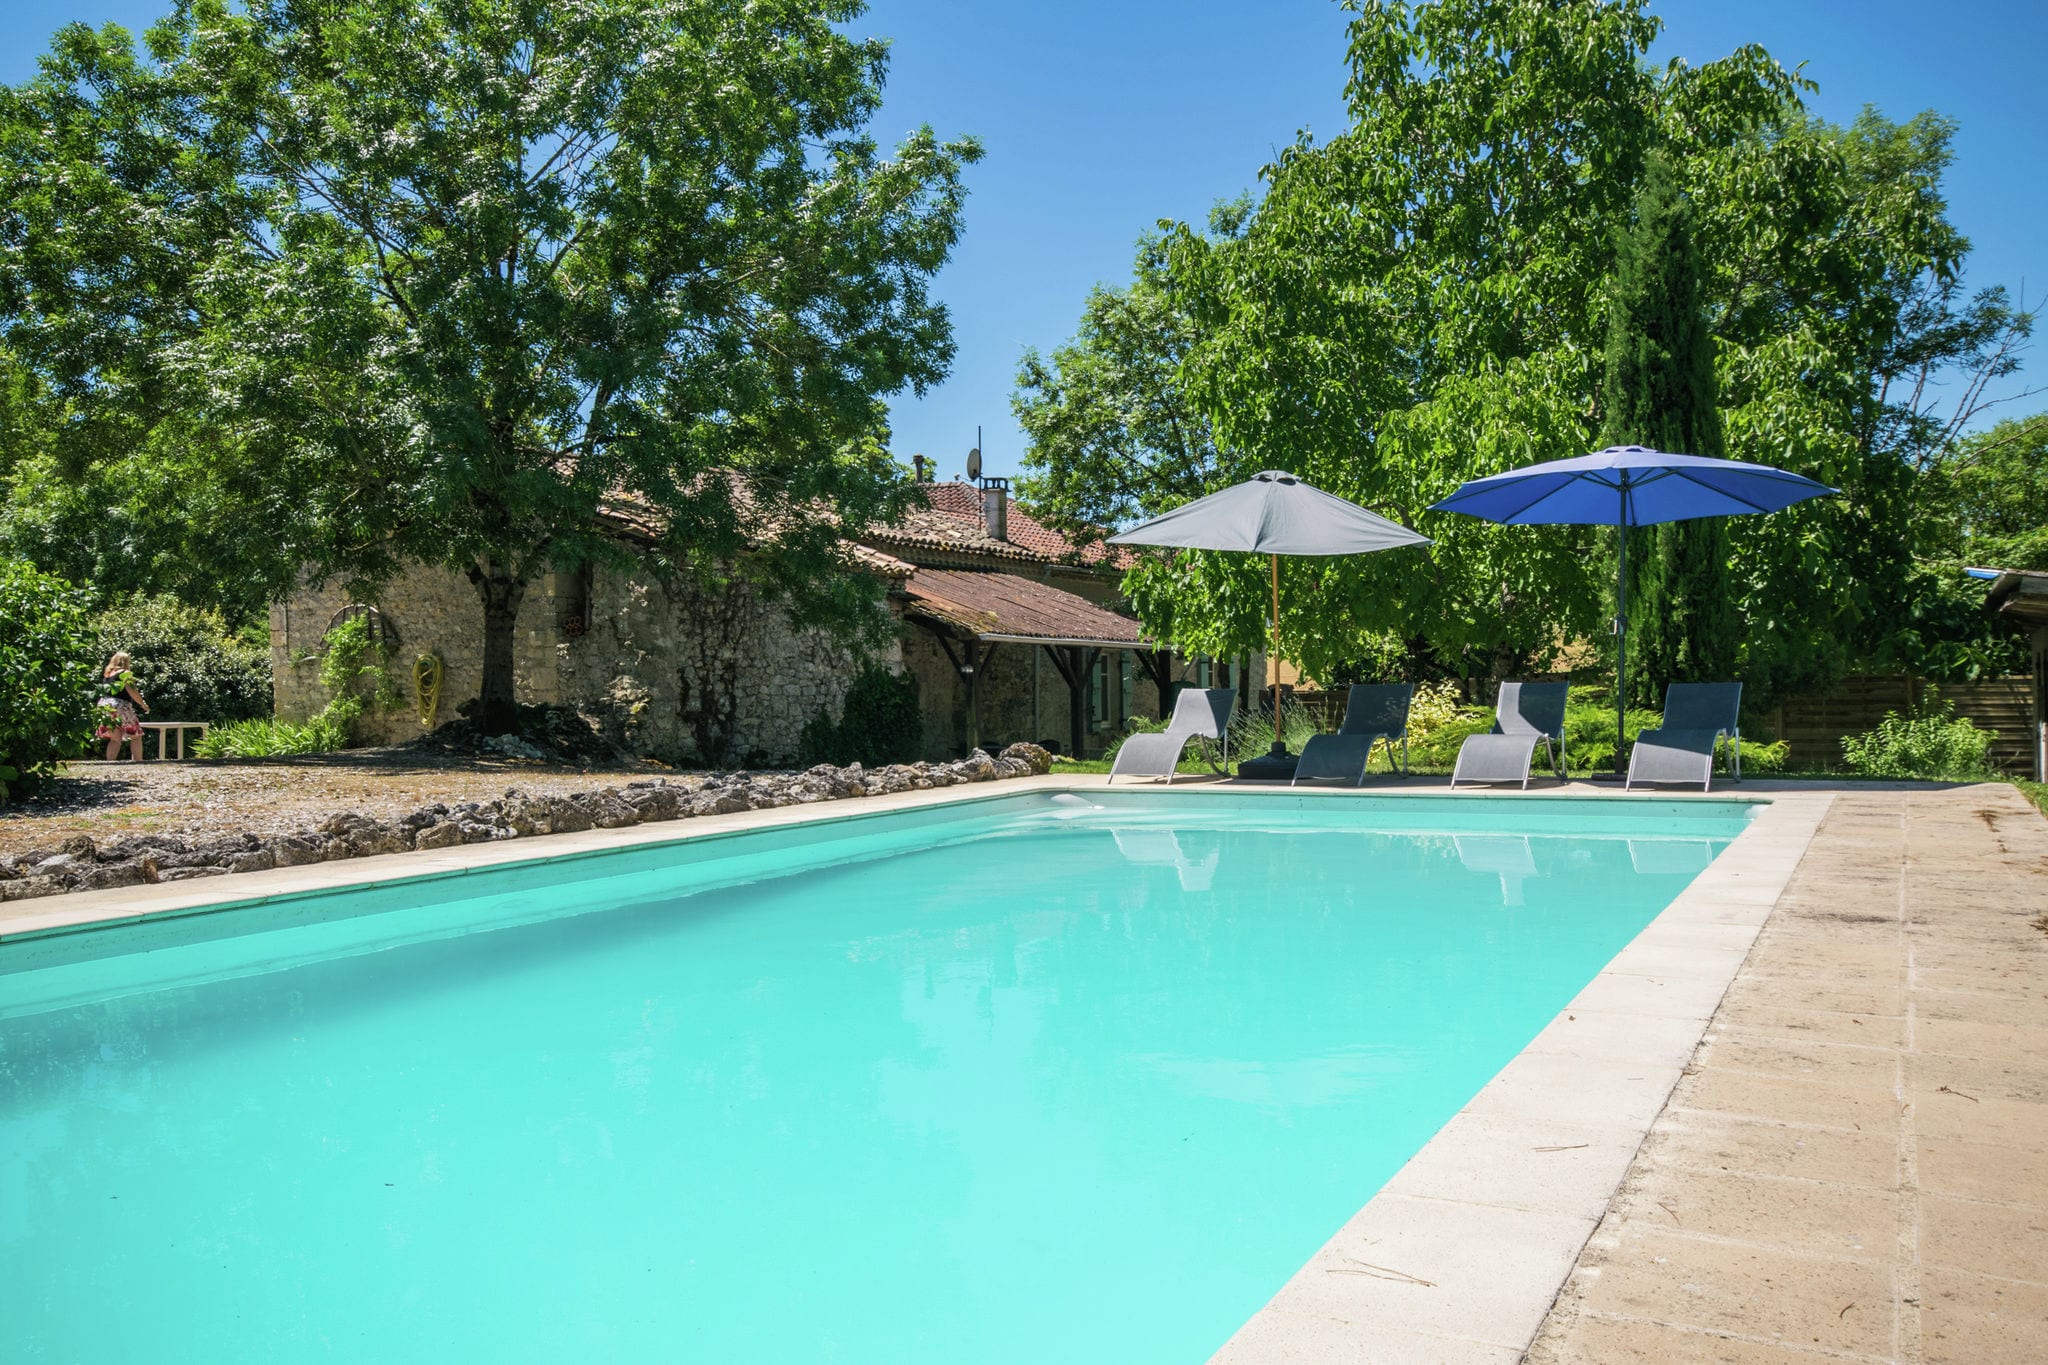 Prachtig authentiek frans huis met prive zwembad op een schitterende locatie.